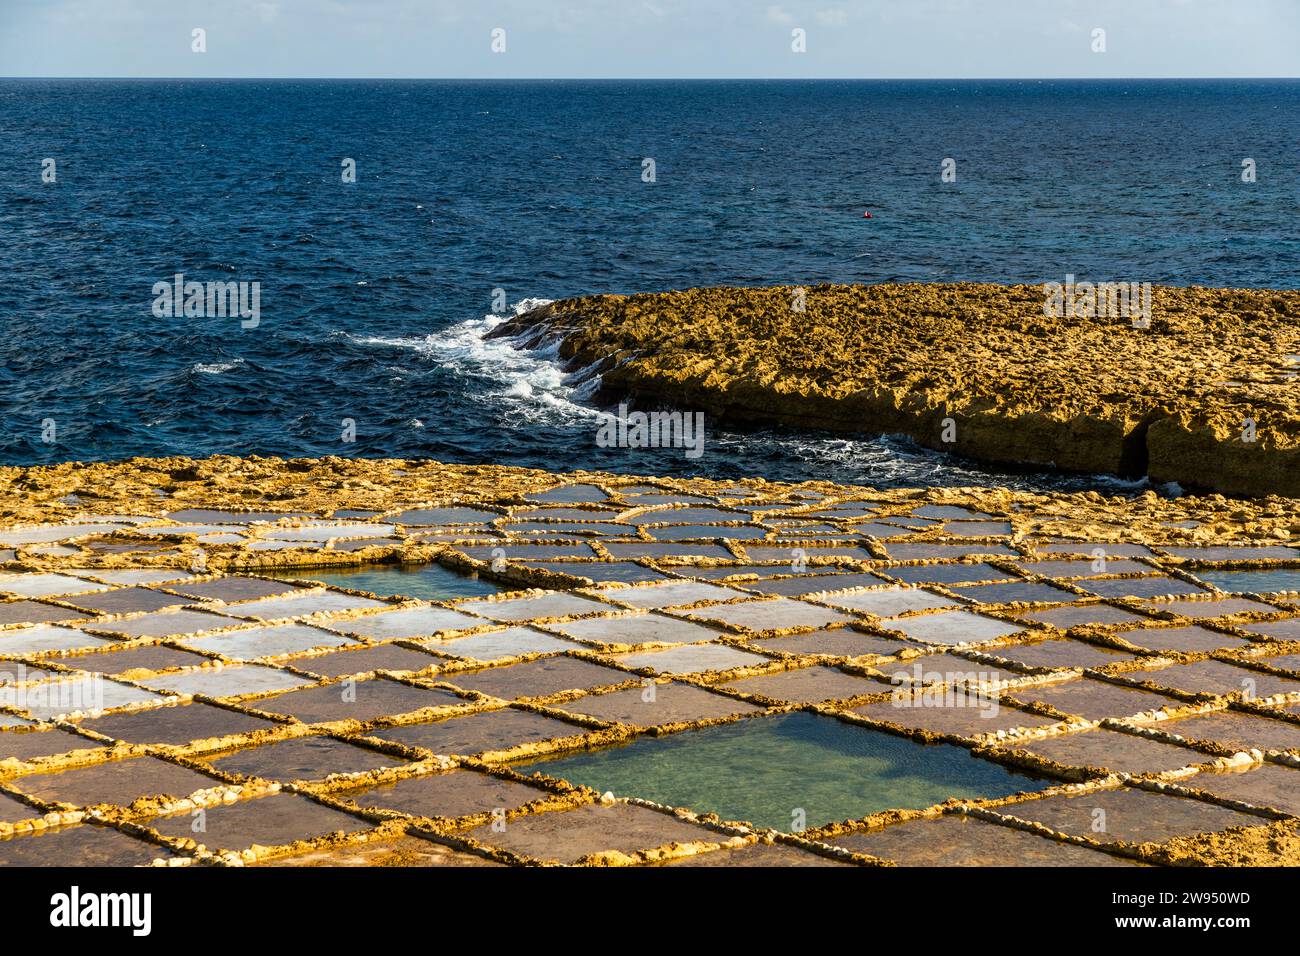 Bucht von Xwejni an der Nordküste von Gozo, wo die Familie Cini seit fünf Generationen Salz sammelt. Die Salinen erstrecken sich entlang der Küste, wo Meerwasser, Wind und Sonne die Bucht zu einem idealen Ort für die Salzgewinnung aus dem Mittelmeer machen. Leli Tal-Melh Salzladen in Xwejni in der Nähe von Marsalforn, Gozo, Malta Stockfoto